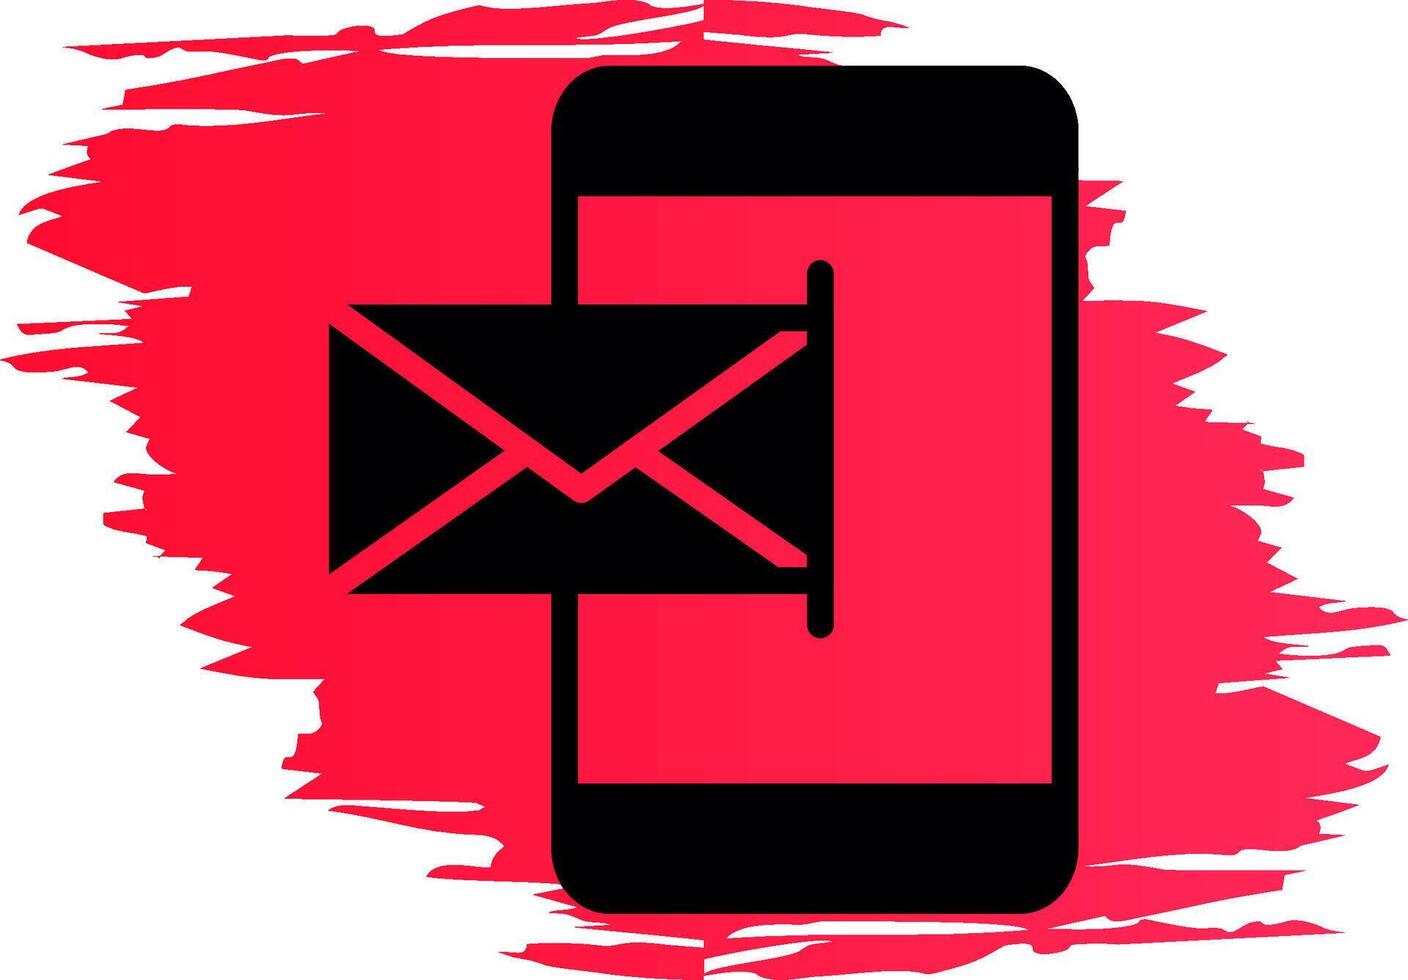 design de ícone criativo de e-mail móvel vetor